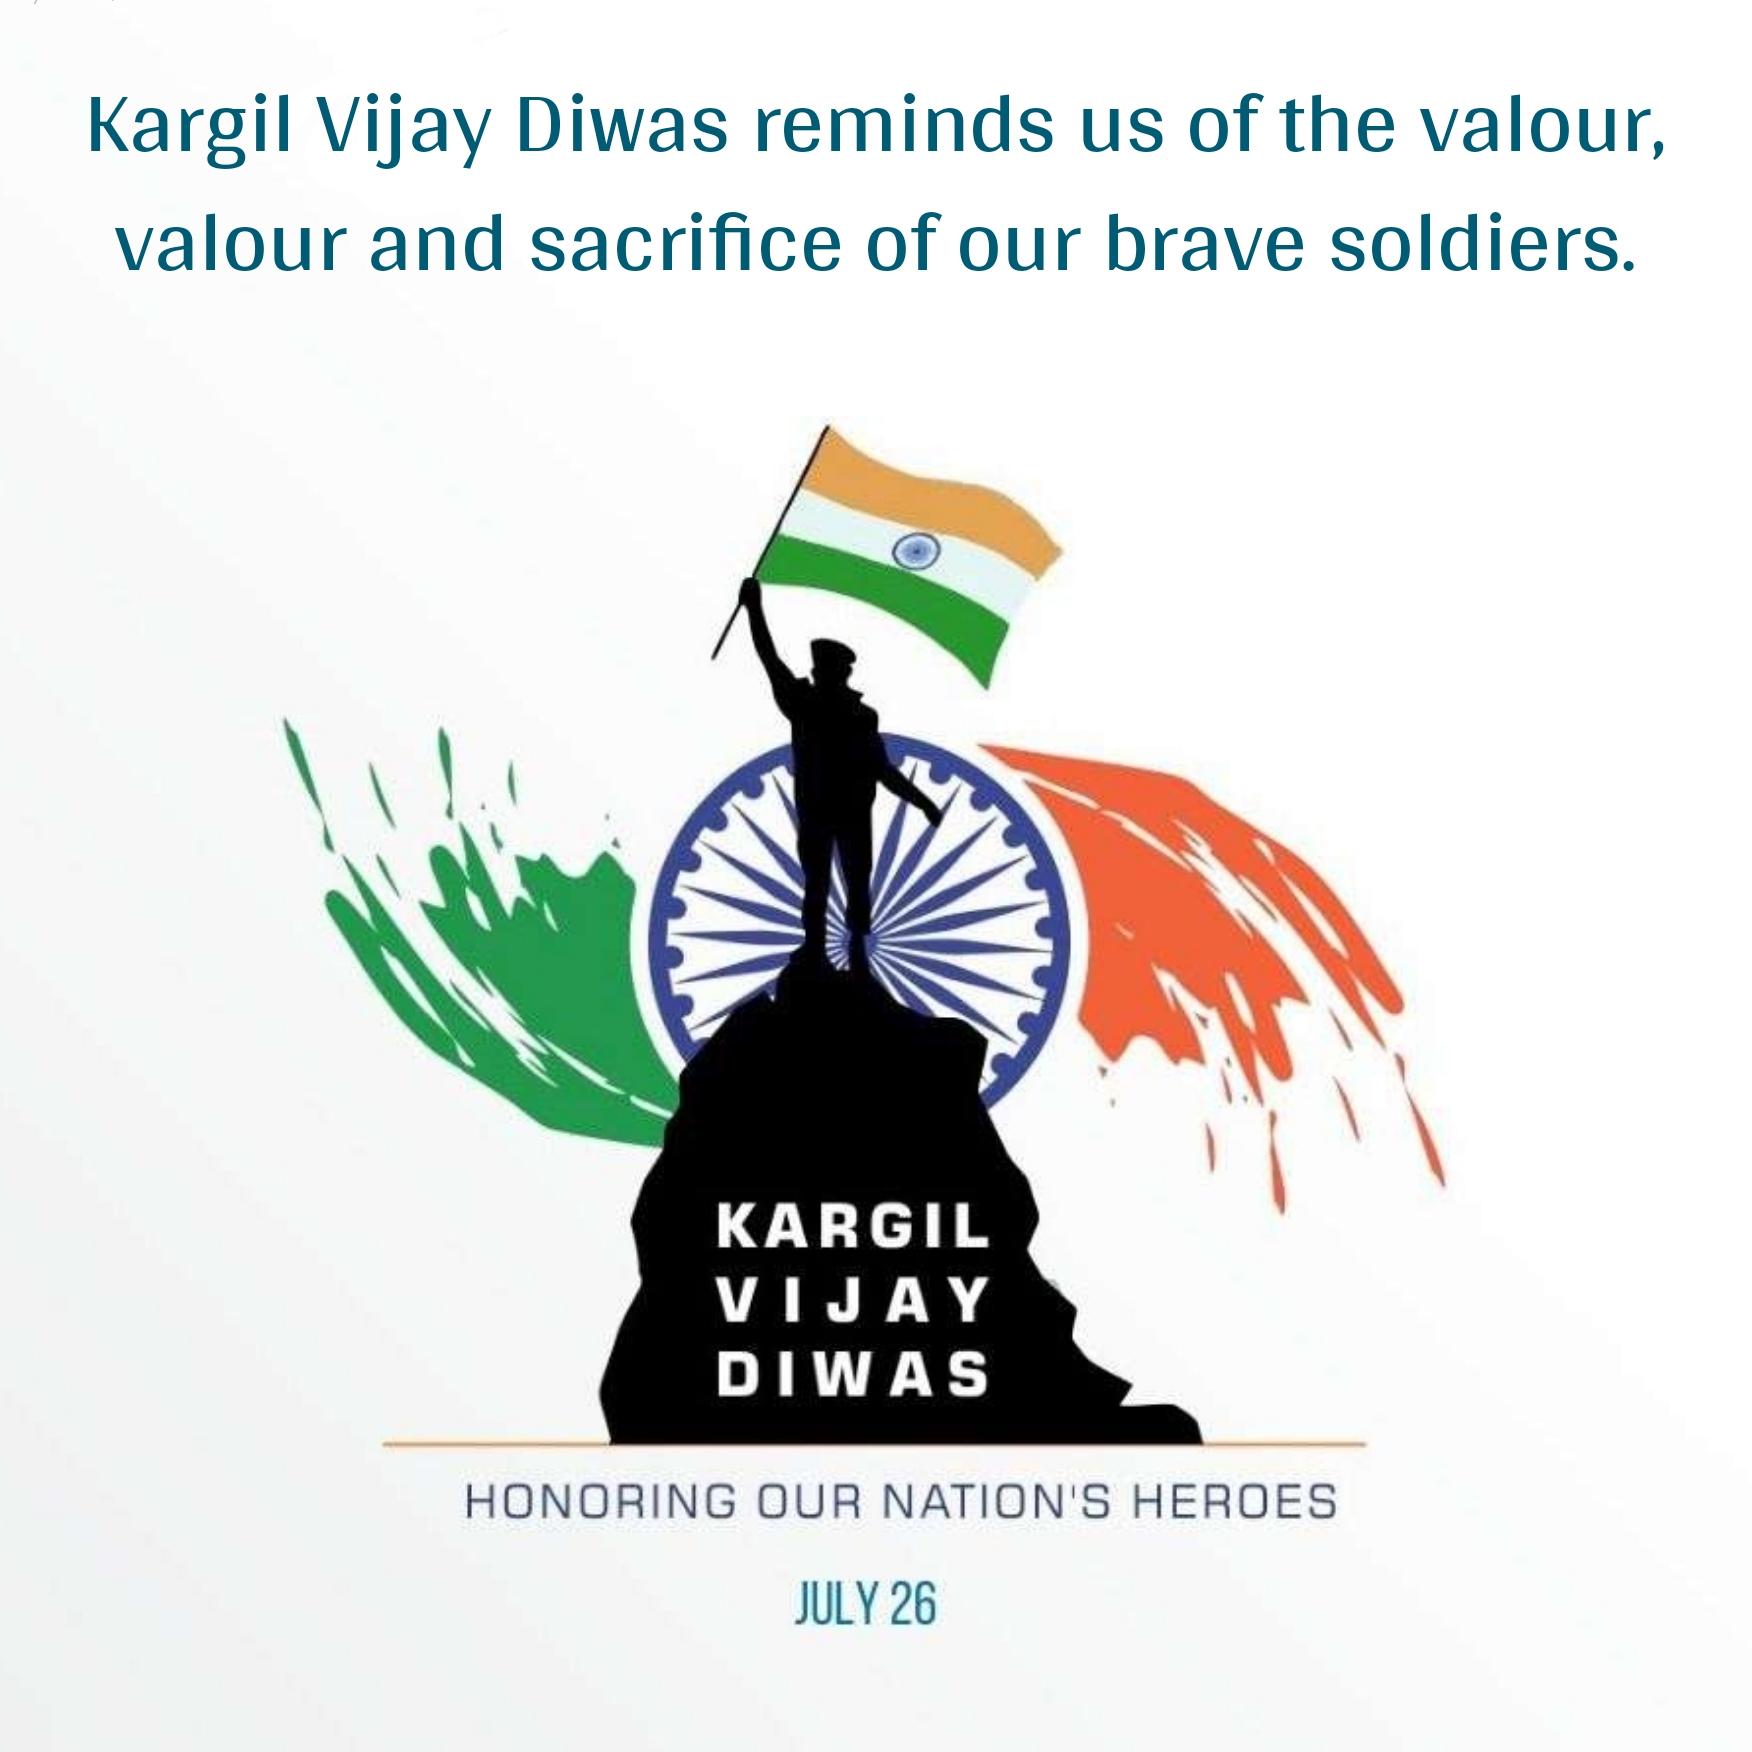 Kargil Vijay Diwas reminds us of the valour valour and sacrifice